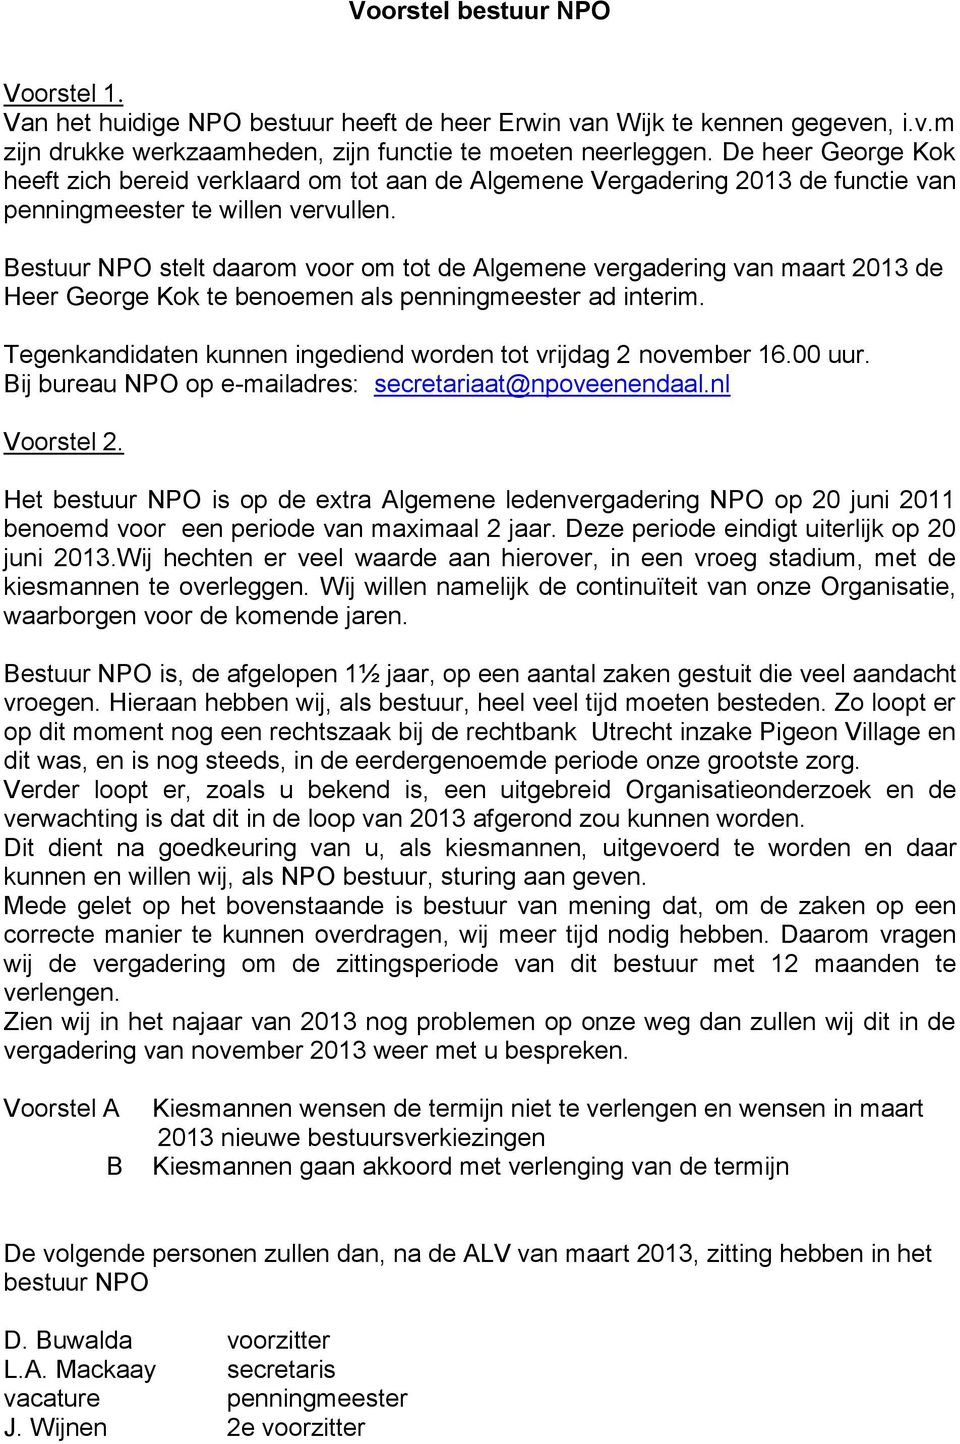 Bestuur NPO stelt daarom voor om tot de Algemene vergadering van maart 2013 de Heer George Kok te benoemen als penningmeester ad interim.